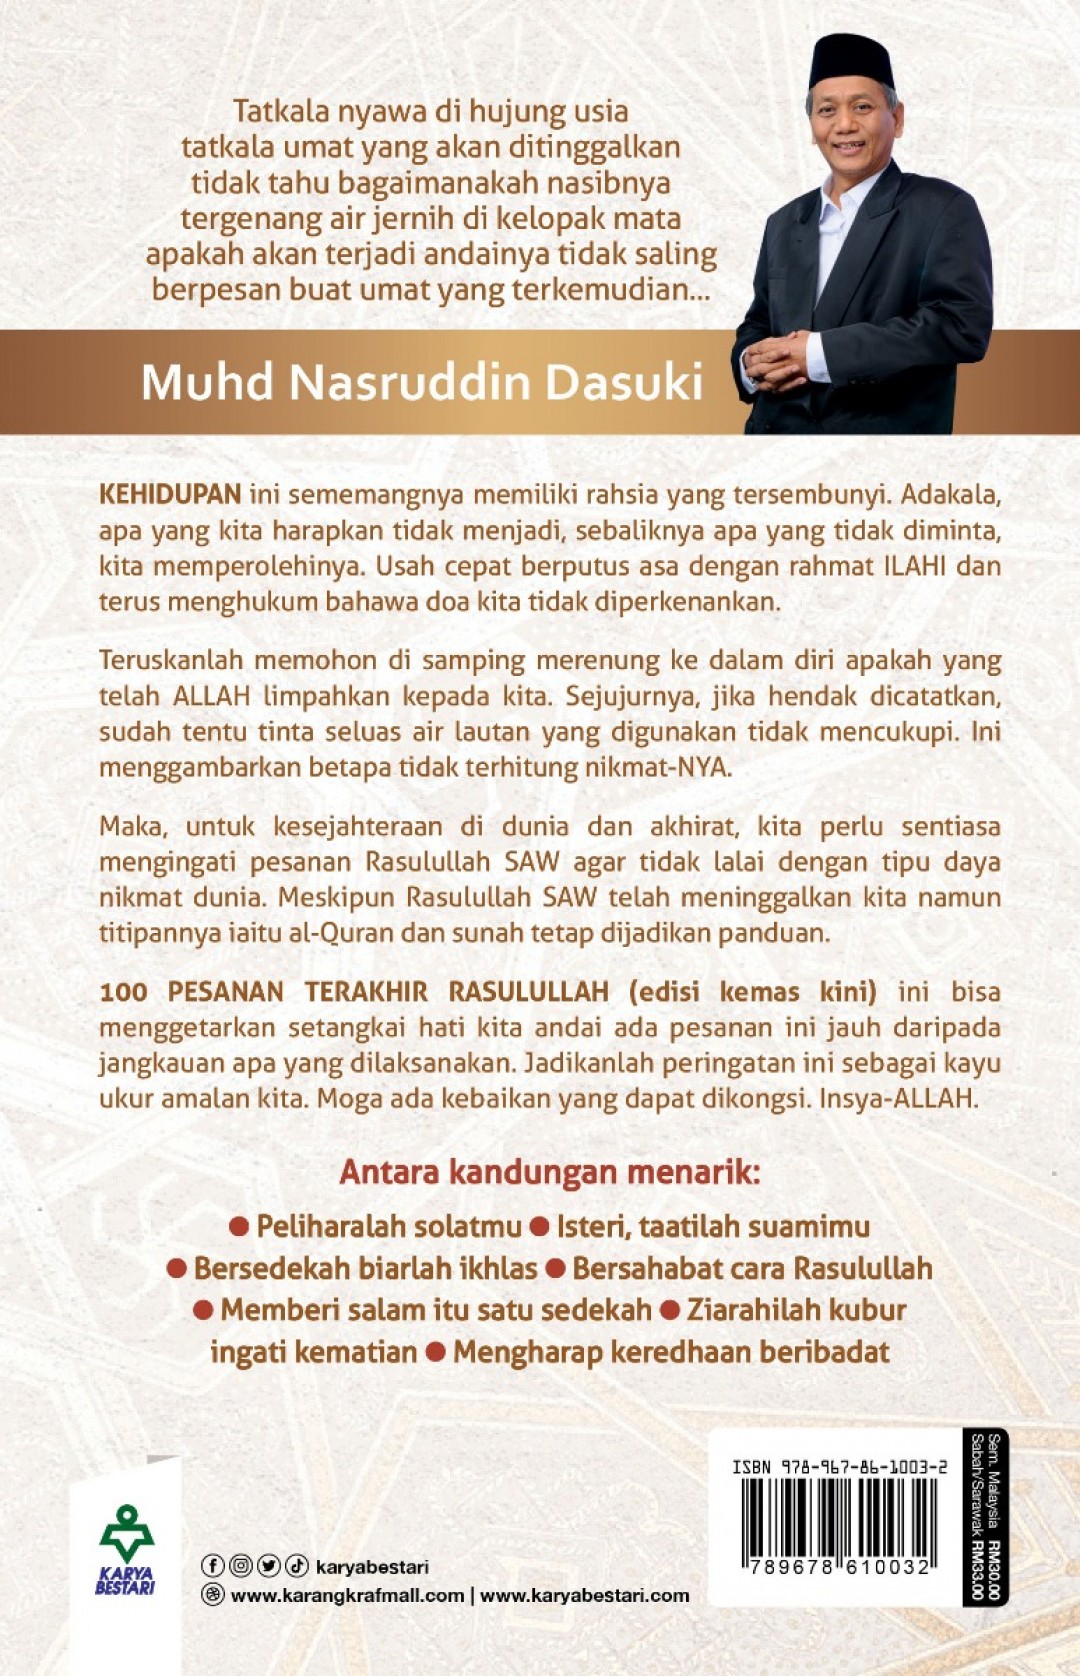 100 Pesanan Terakhir Rasulullah (Edisi Kemas Kini) - Muhd Nasrud